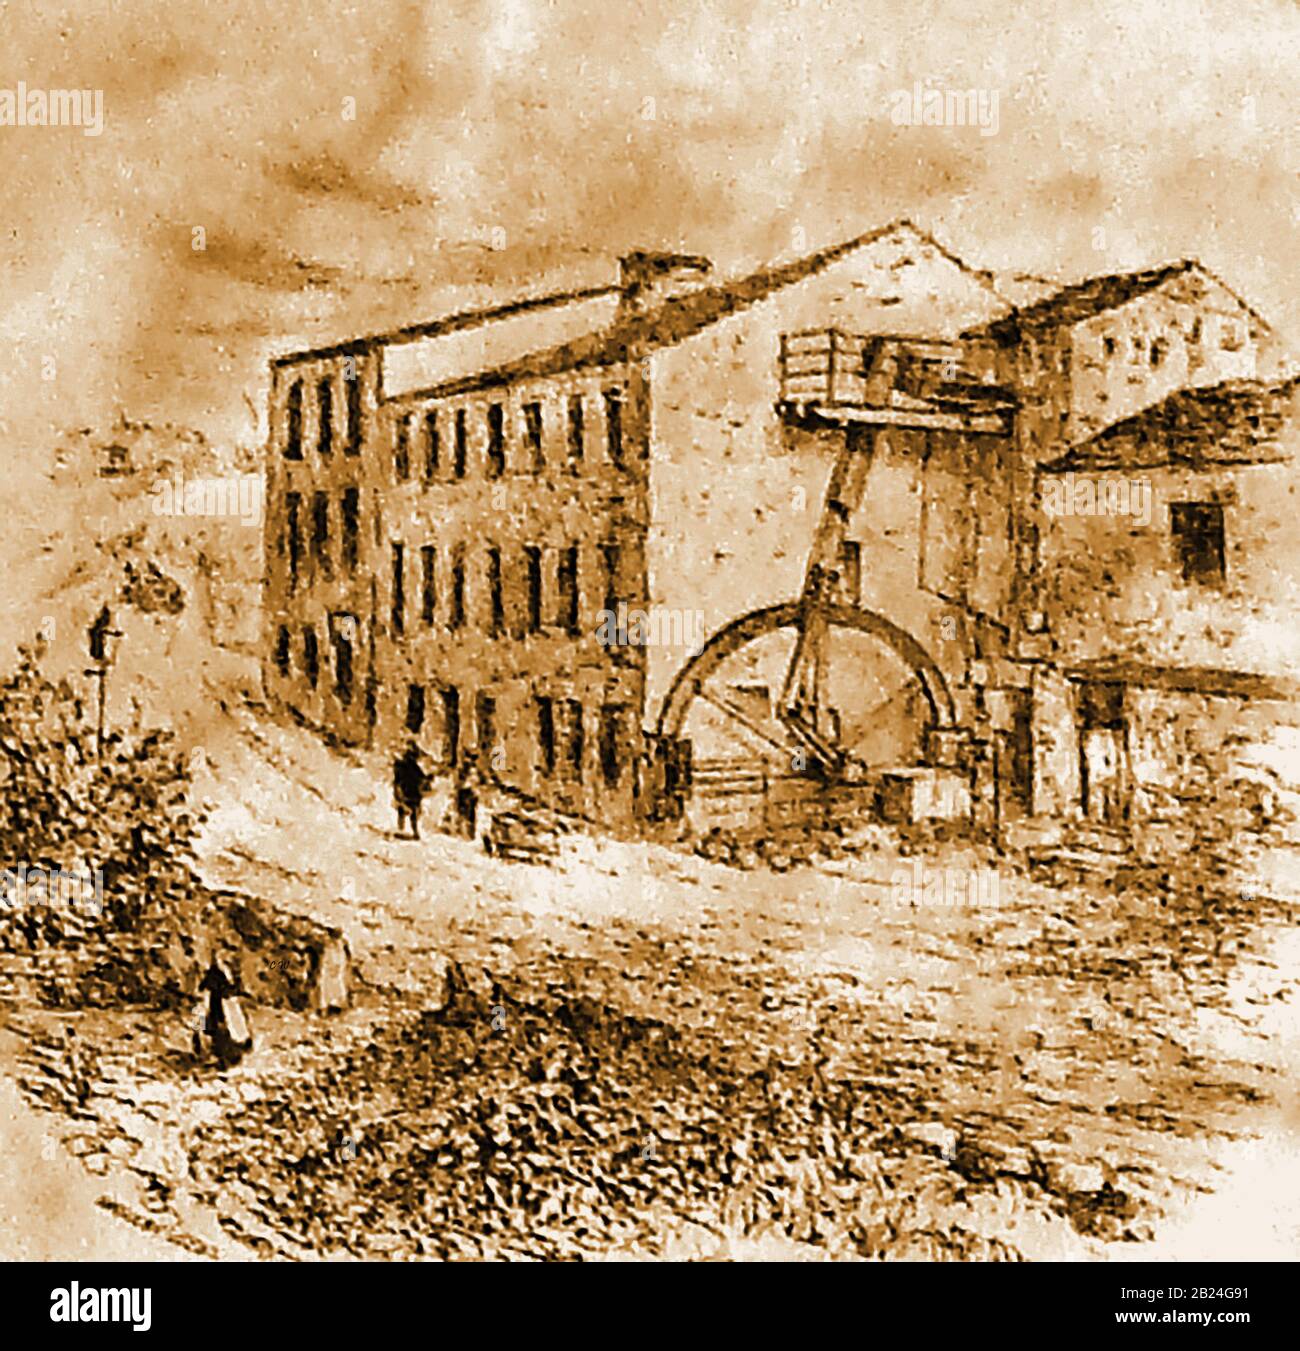 Crank Mill(s), Station Road, Morley, West Yorkshire, construido en 1700. Mostrando el volante anterior y el cigüeñal- fue el primer molino de lana a vapor que se abrió en el distrito. El edificio sigue en pie (una estructura catalogada de grado II), pero ya no es un molino. Foto de stock